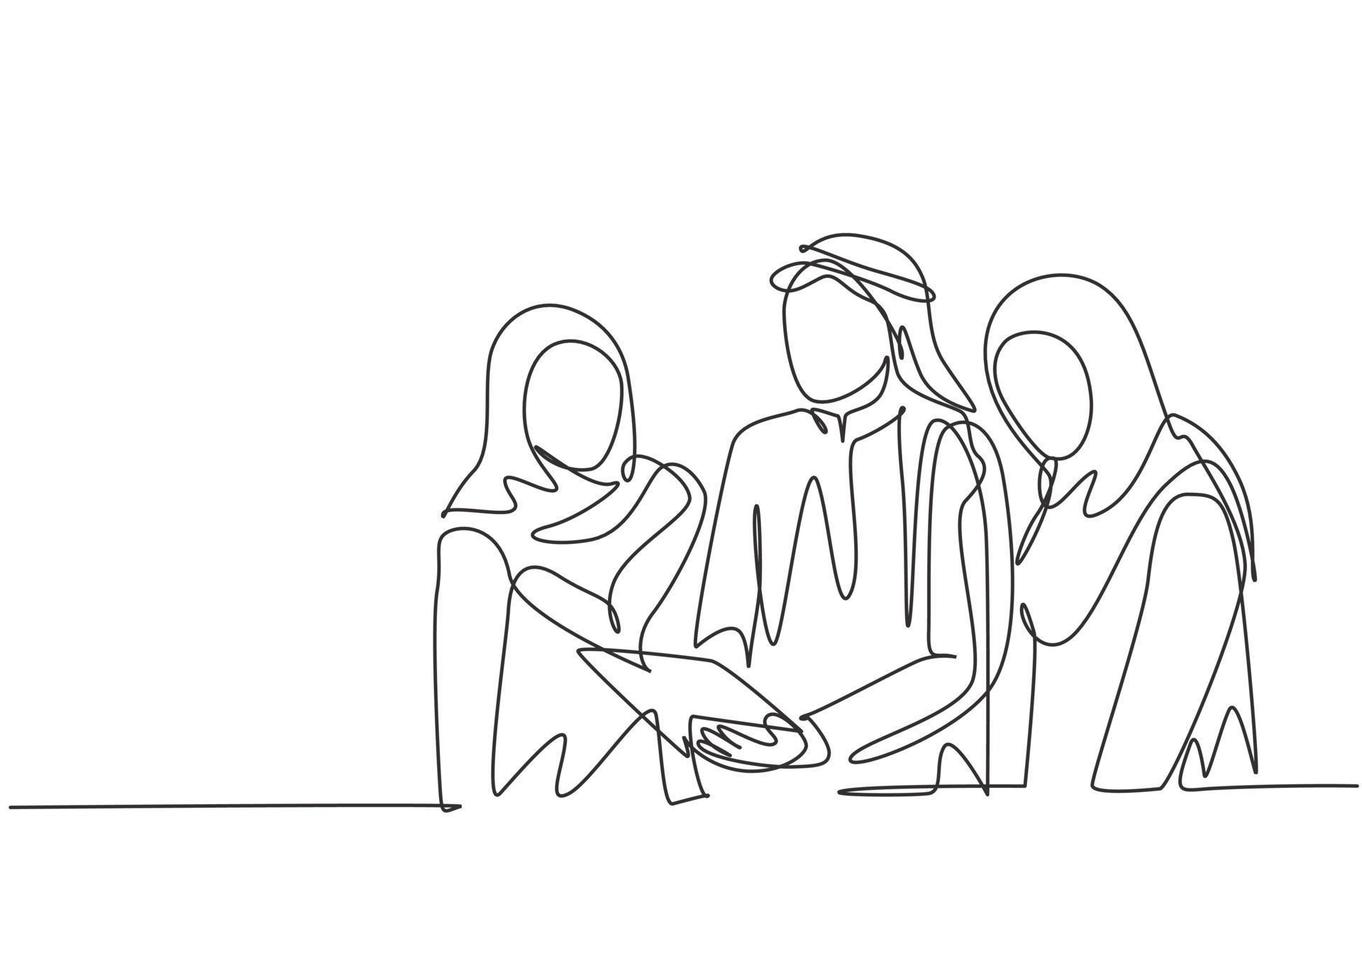 un dibujo de una sola línea del joven gerente de marketing musulmán dando dirección de trabajo al personal. tela de arabia saudita shmag, kandora, pañuelo en la cabeza, thobe, hijab. Ilustración de vector de diseño de dibujo de línea continua